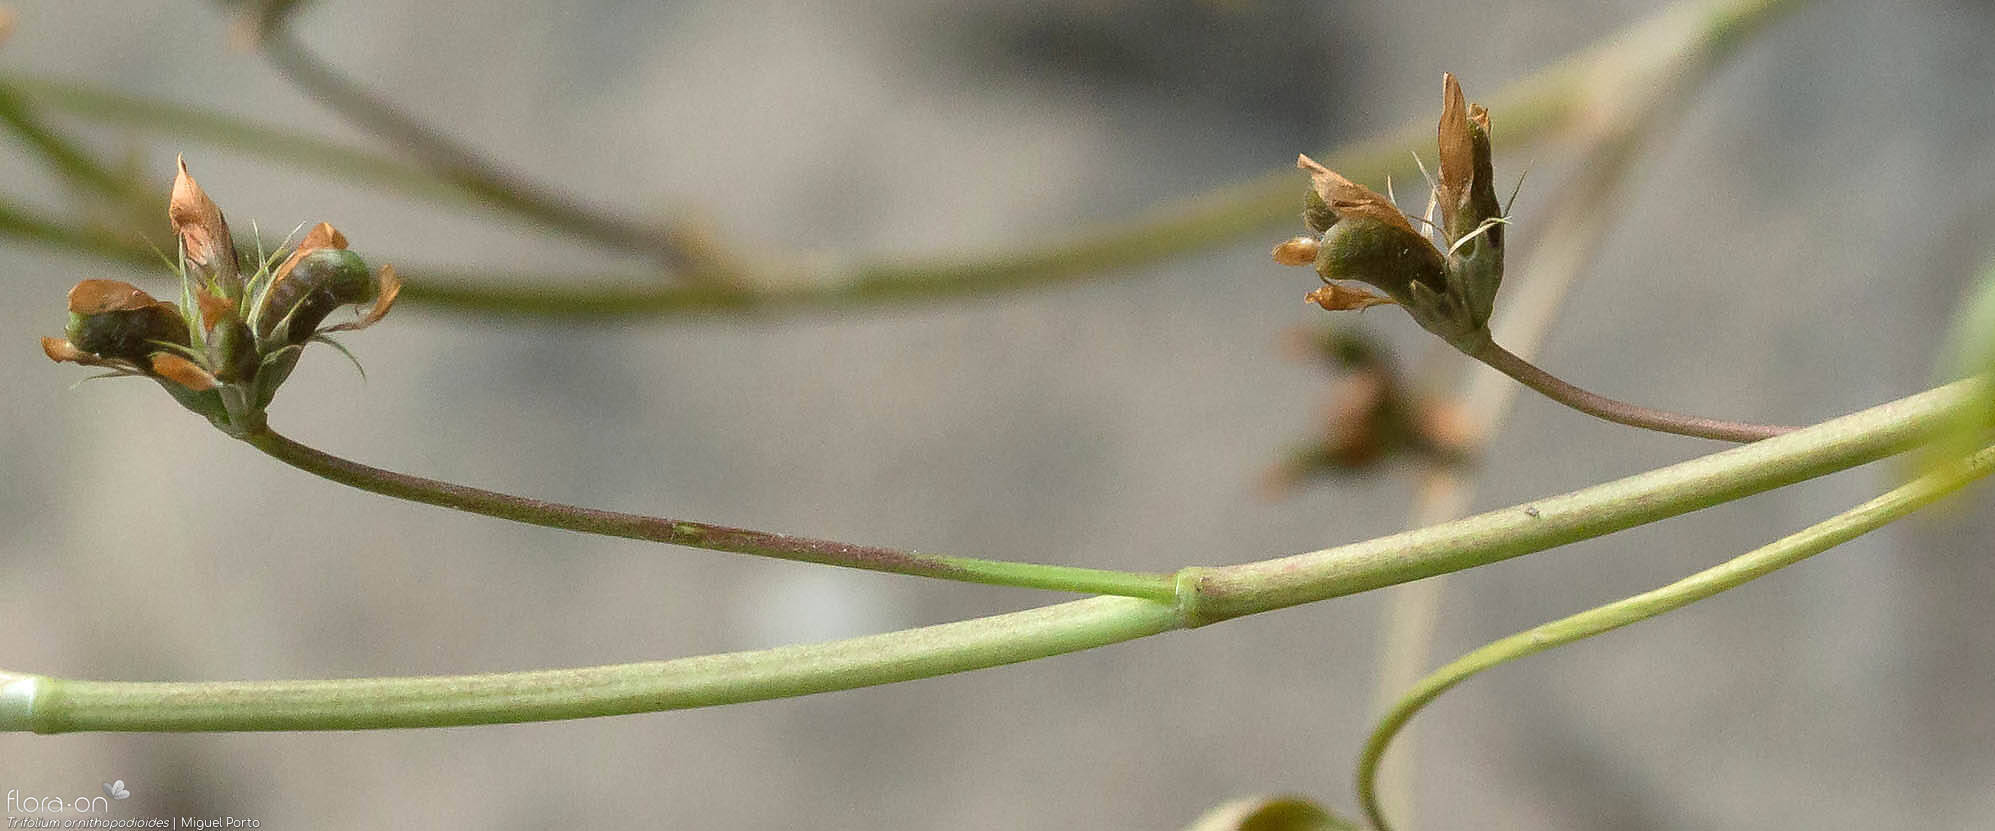 Trifolium ornithopodioides - Fruto | Miguel Porto; CC BY-NC 4.0